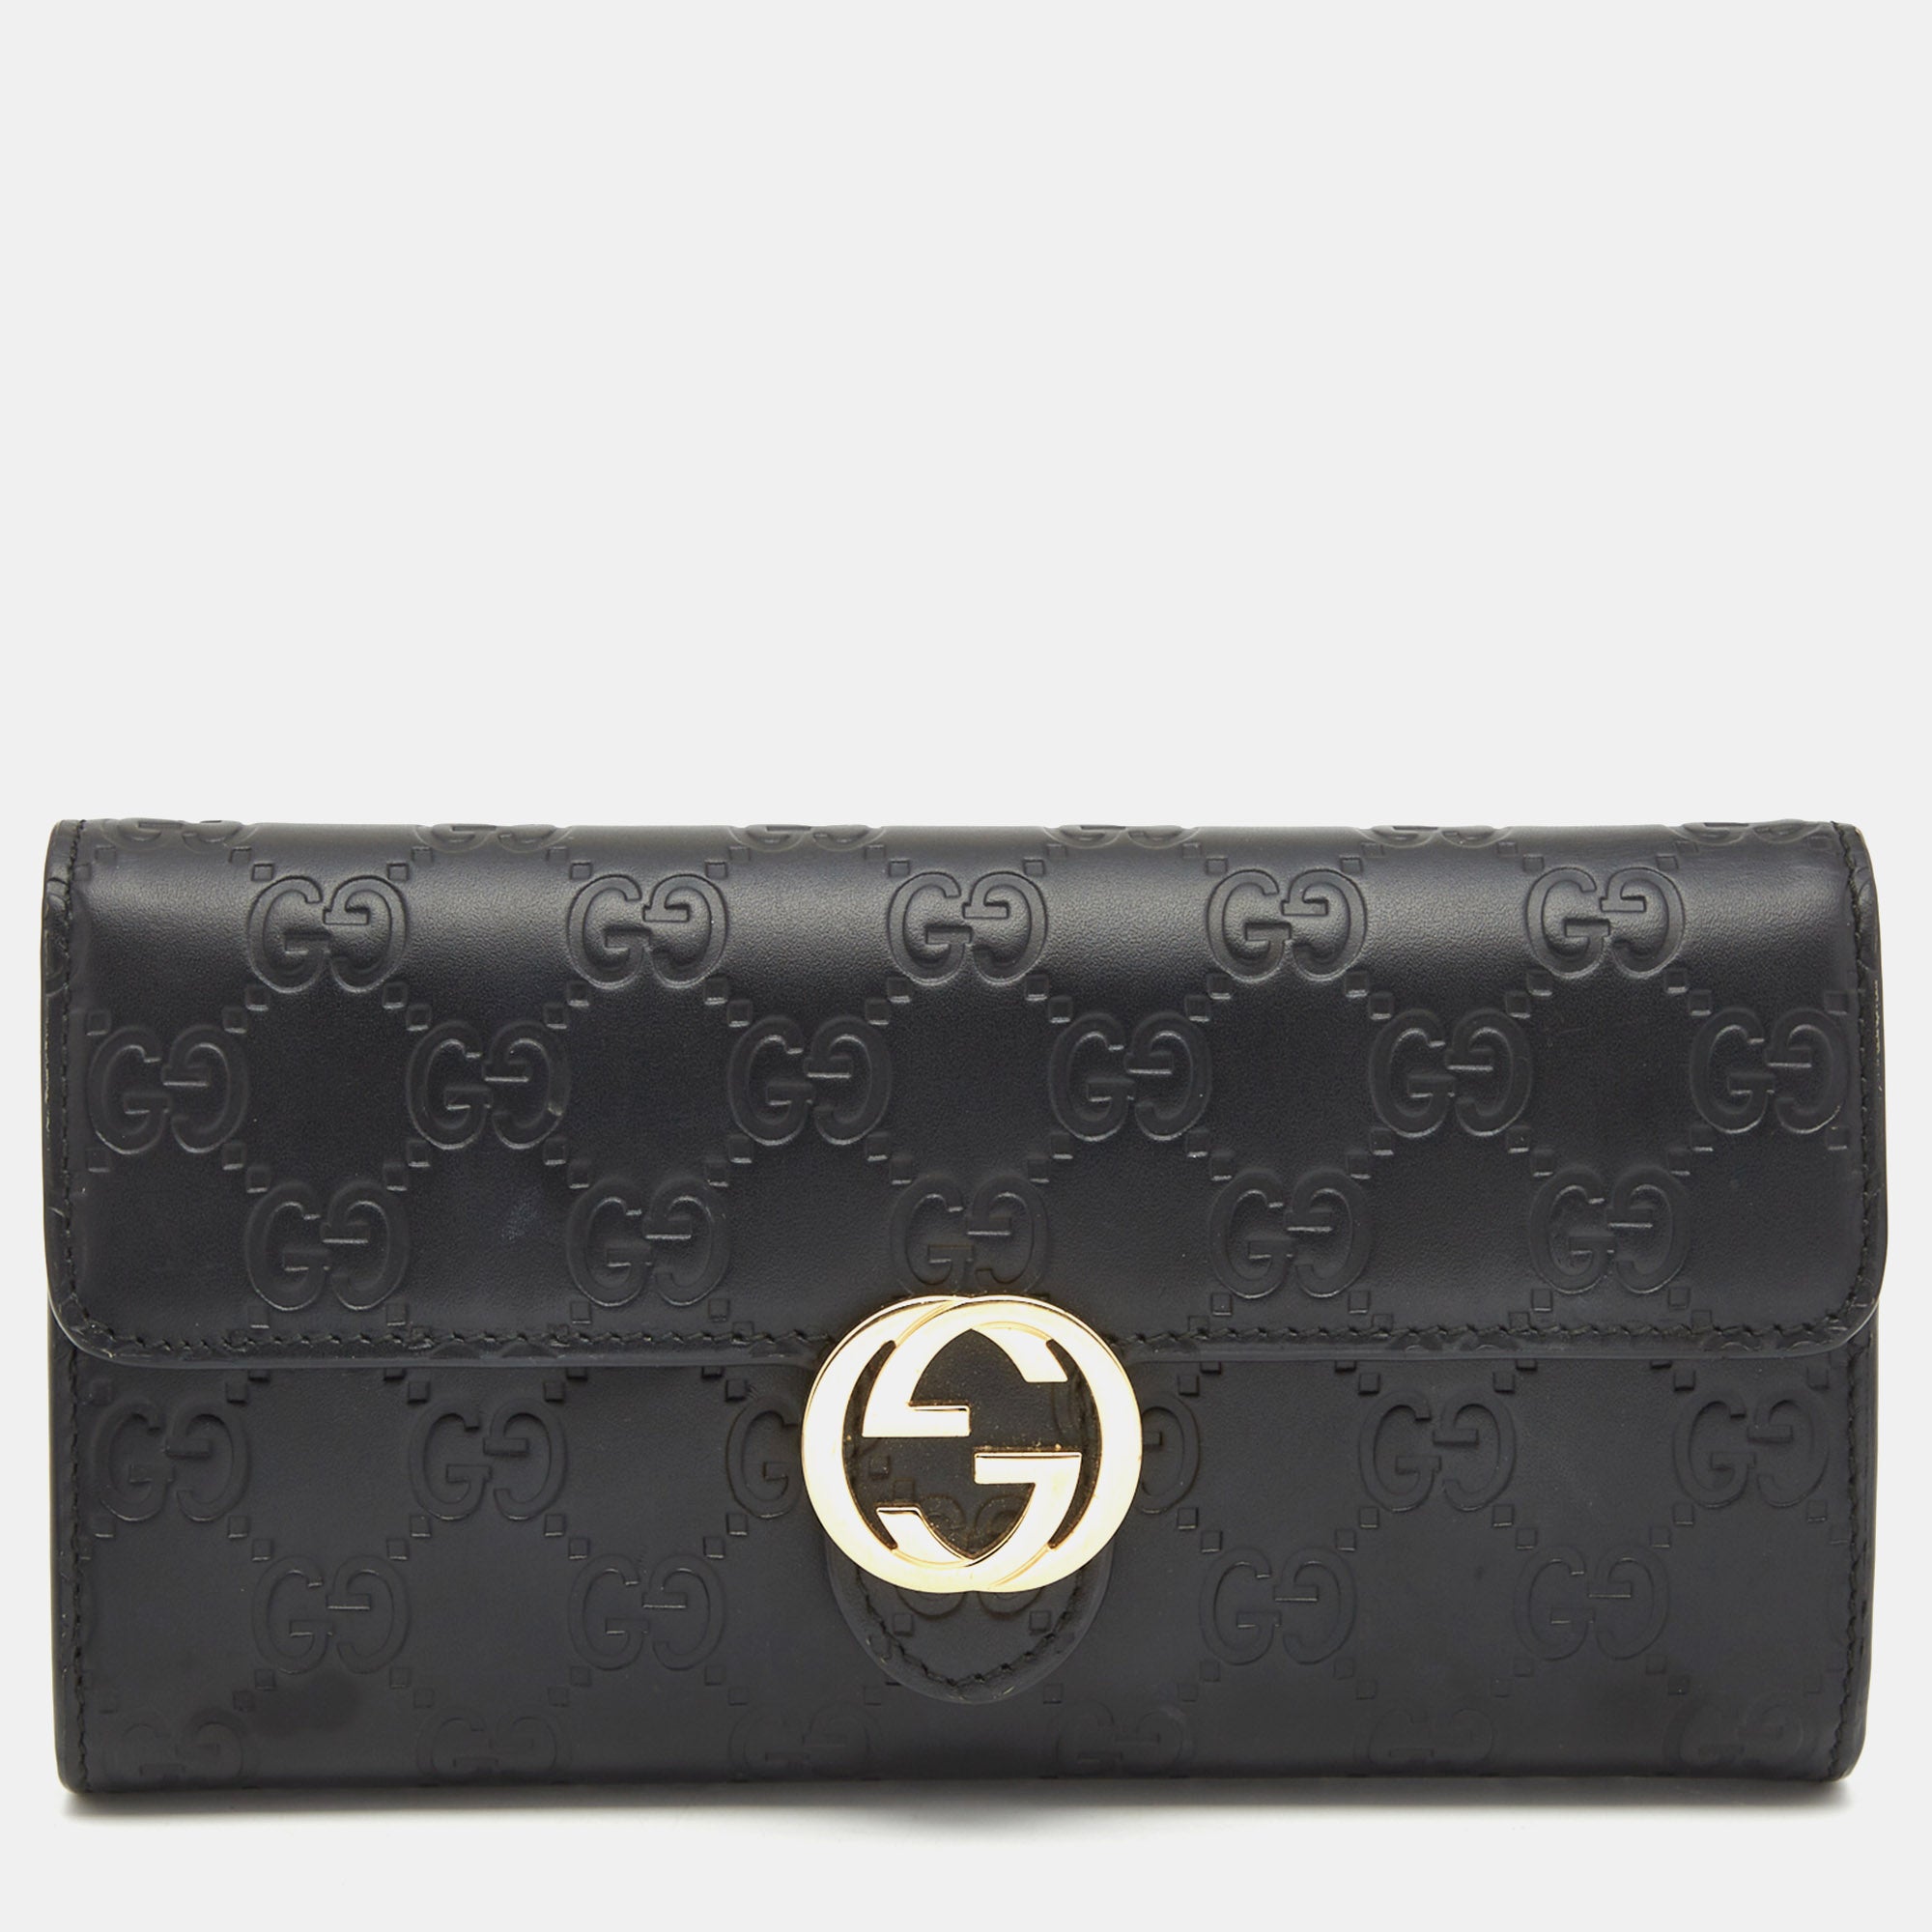 Gucci, Bags, Vintage Gucci 955 Horsebit Black Leather Purse